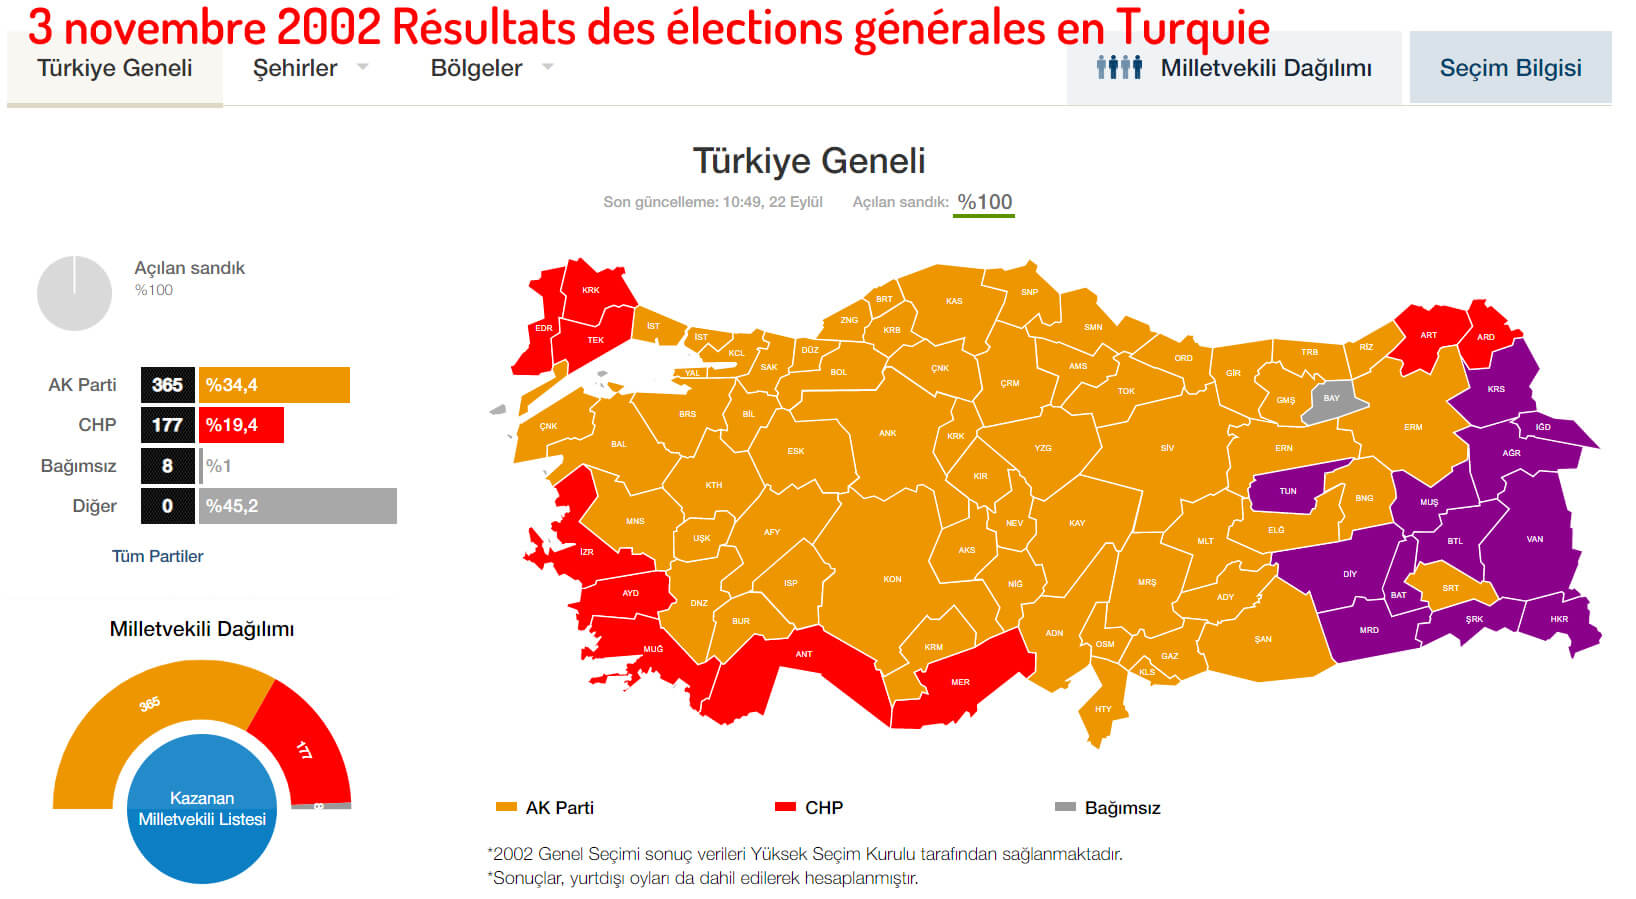 3 novembre 2002 Résultats des élections générales en Turquie